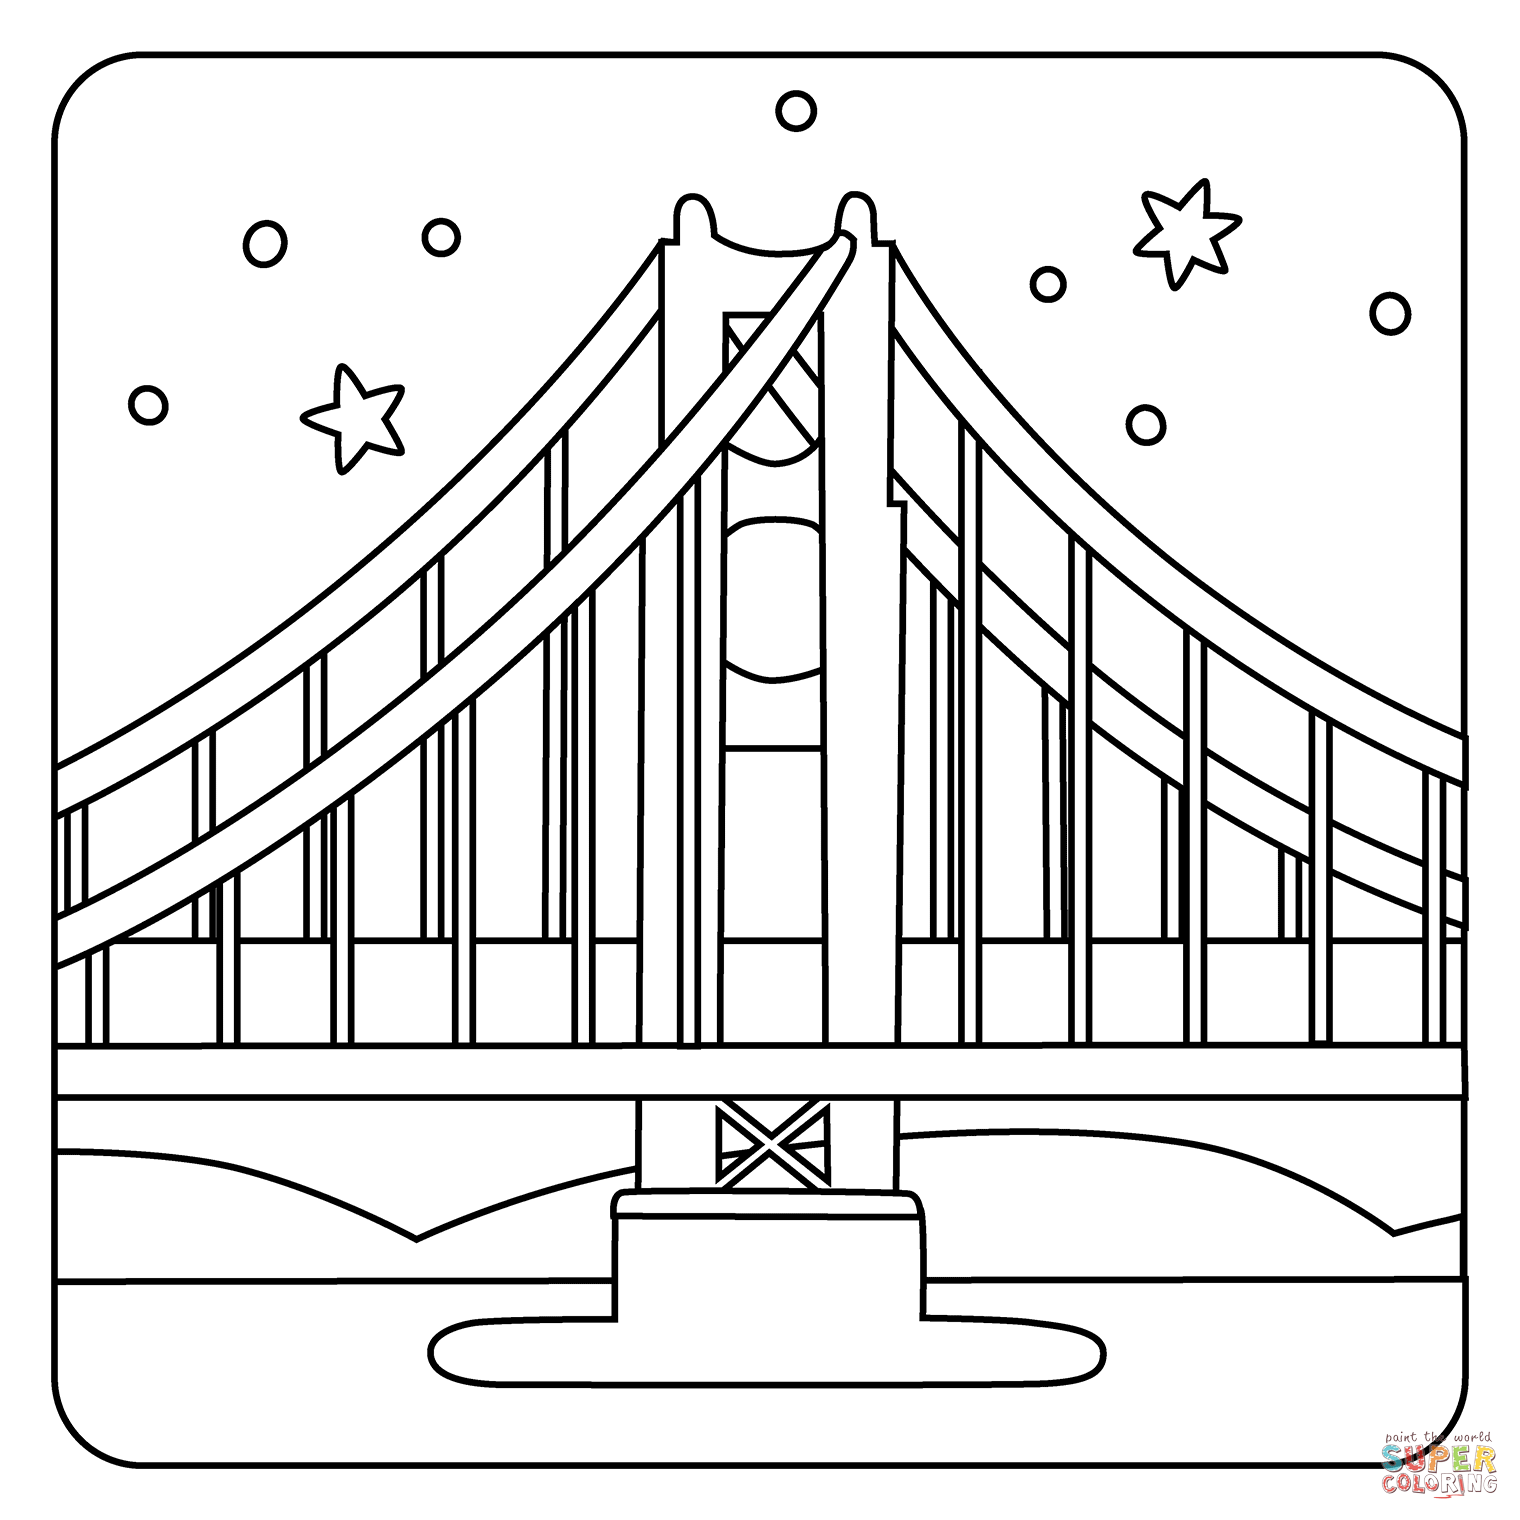 Bridge at night emoji coloring page